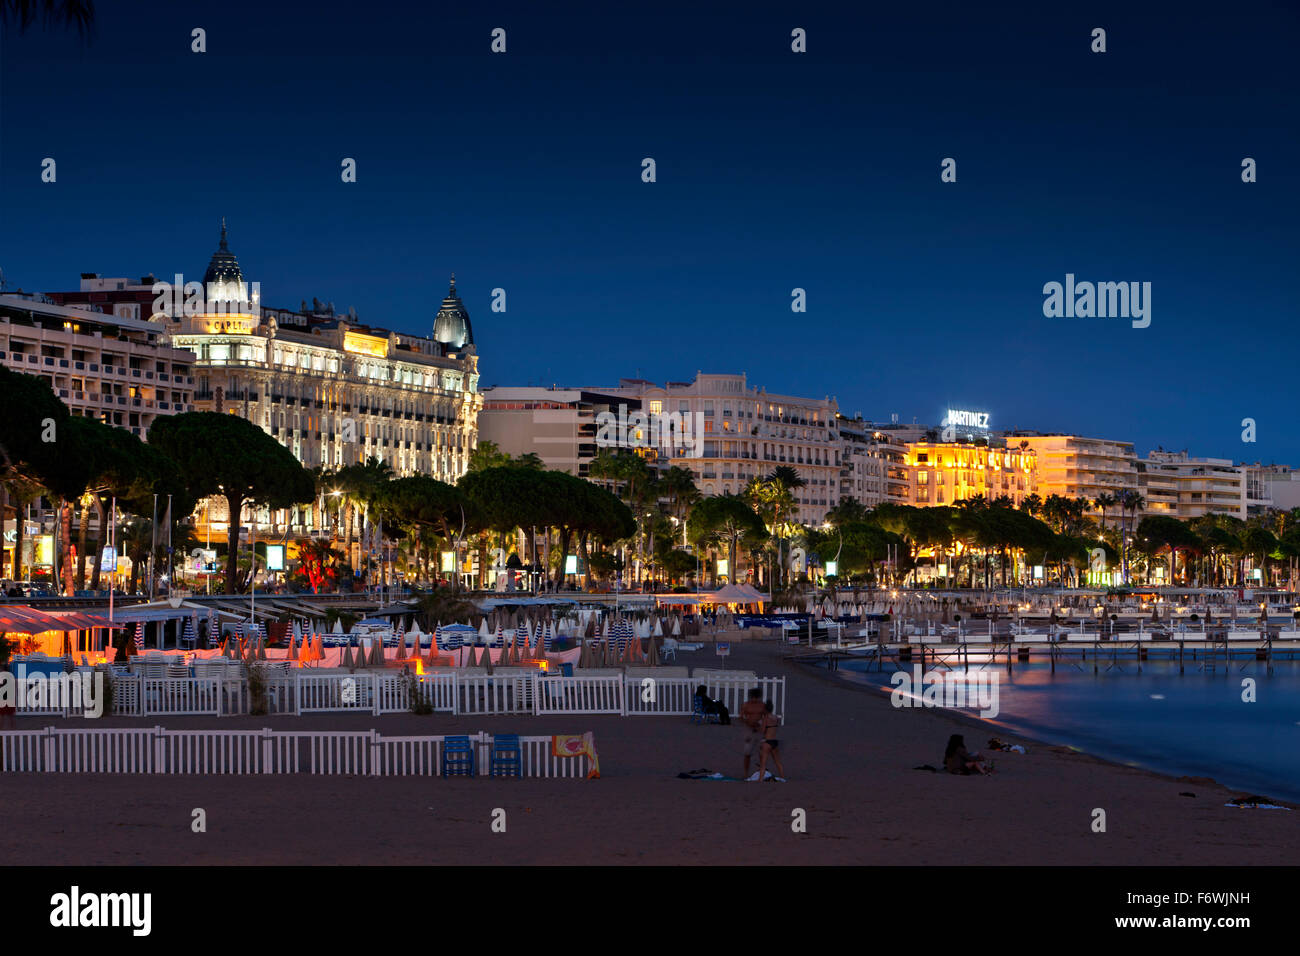 Hôtels de Luxe et plage au crépuscule, Cannes, Provence, France Banque D'Images